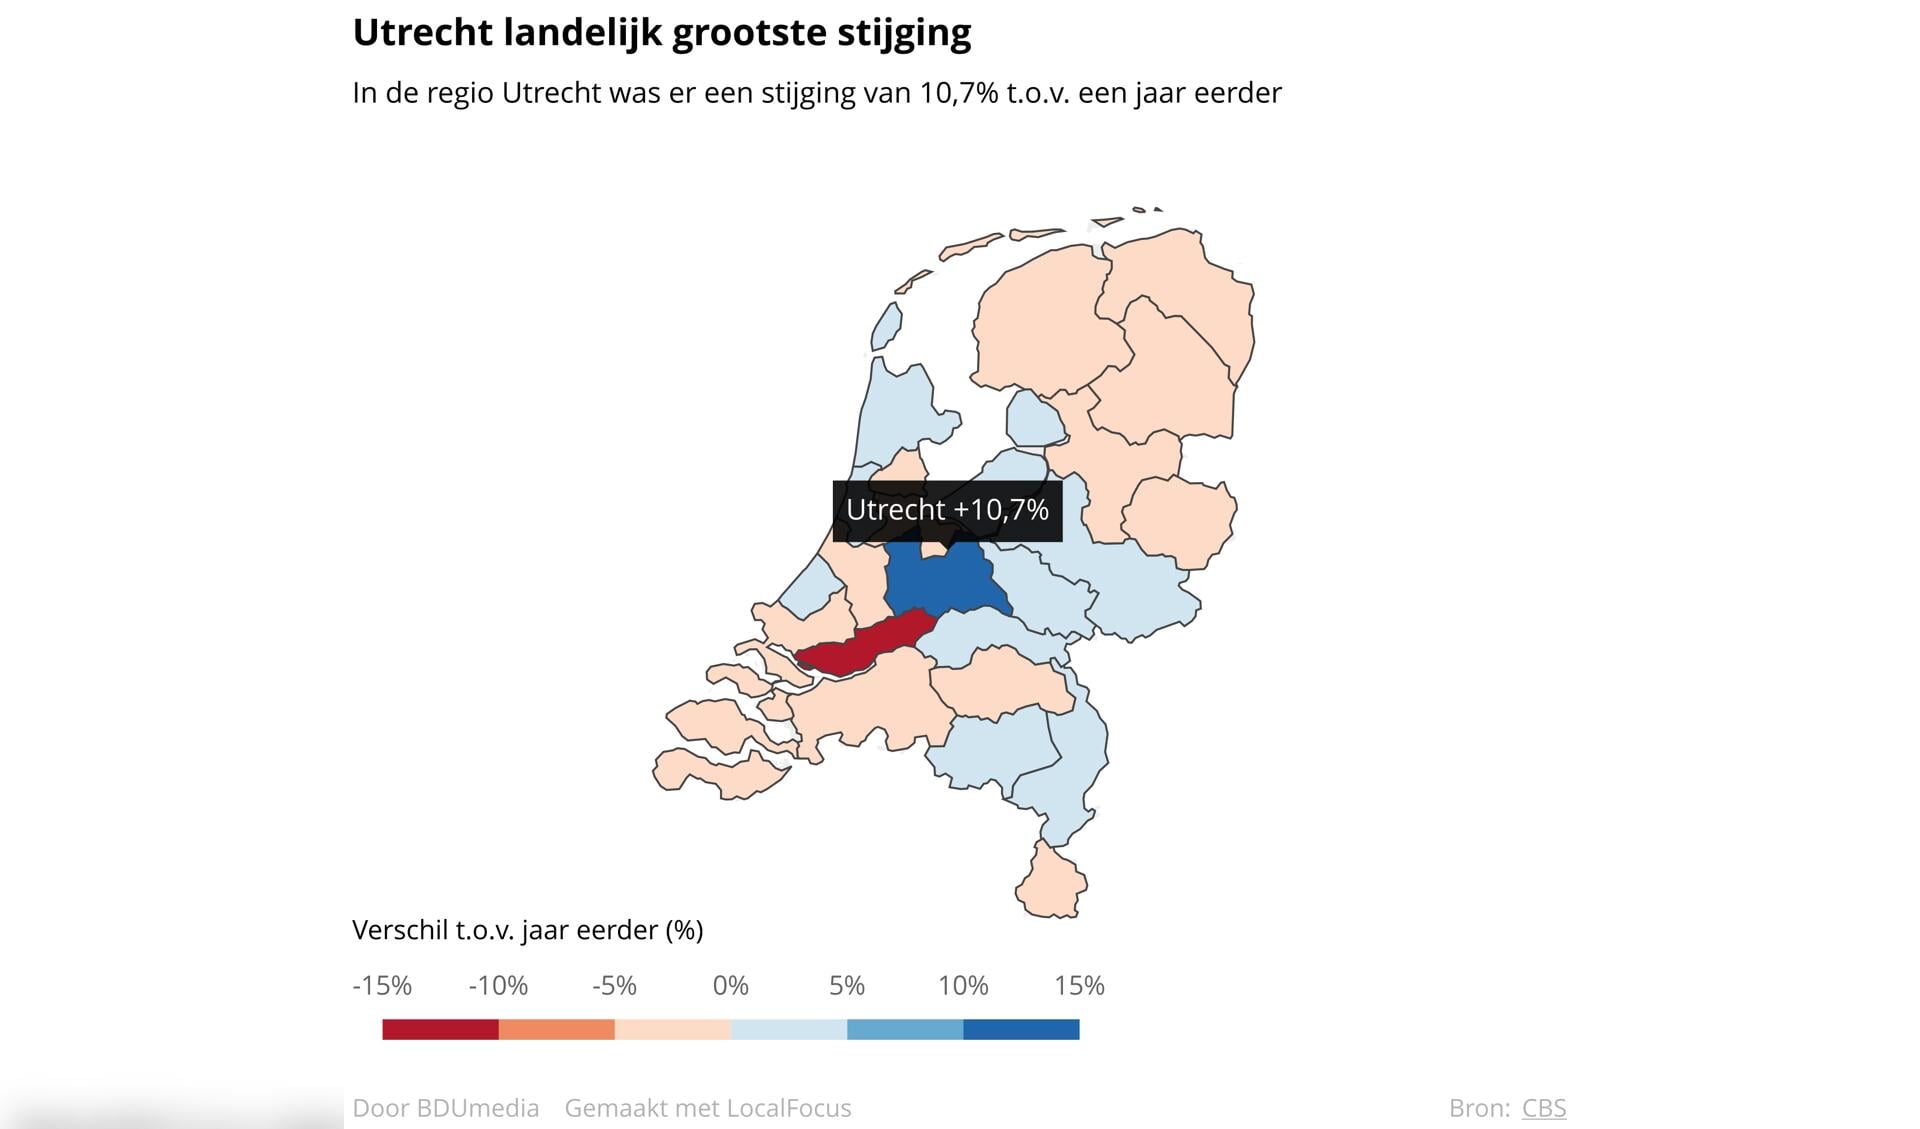 In de regio Utrecht was er een stijging van 10,7% t.o.v. een jaar eerder